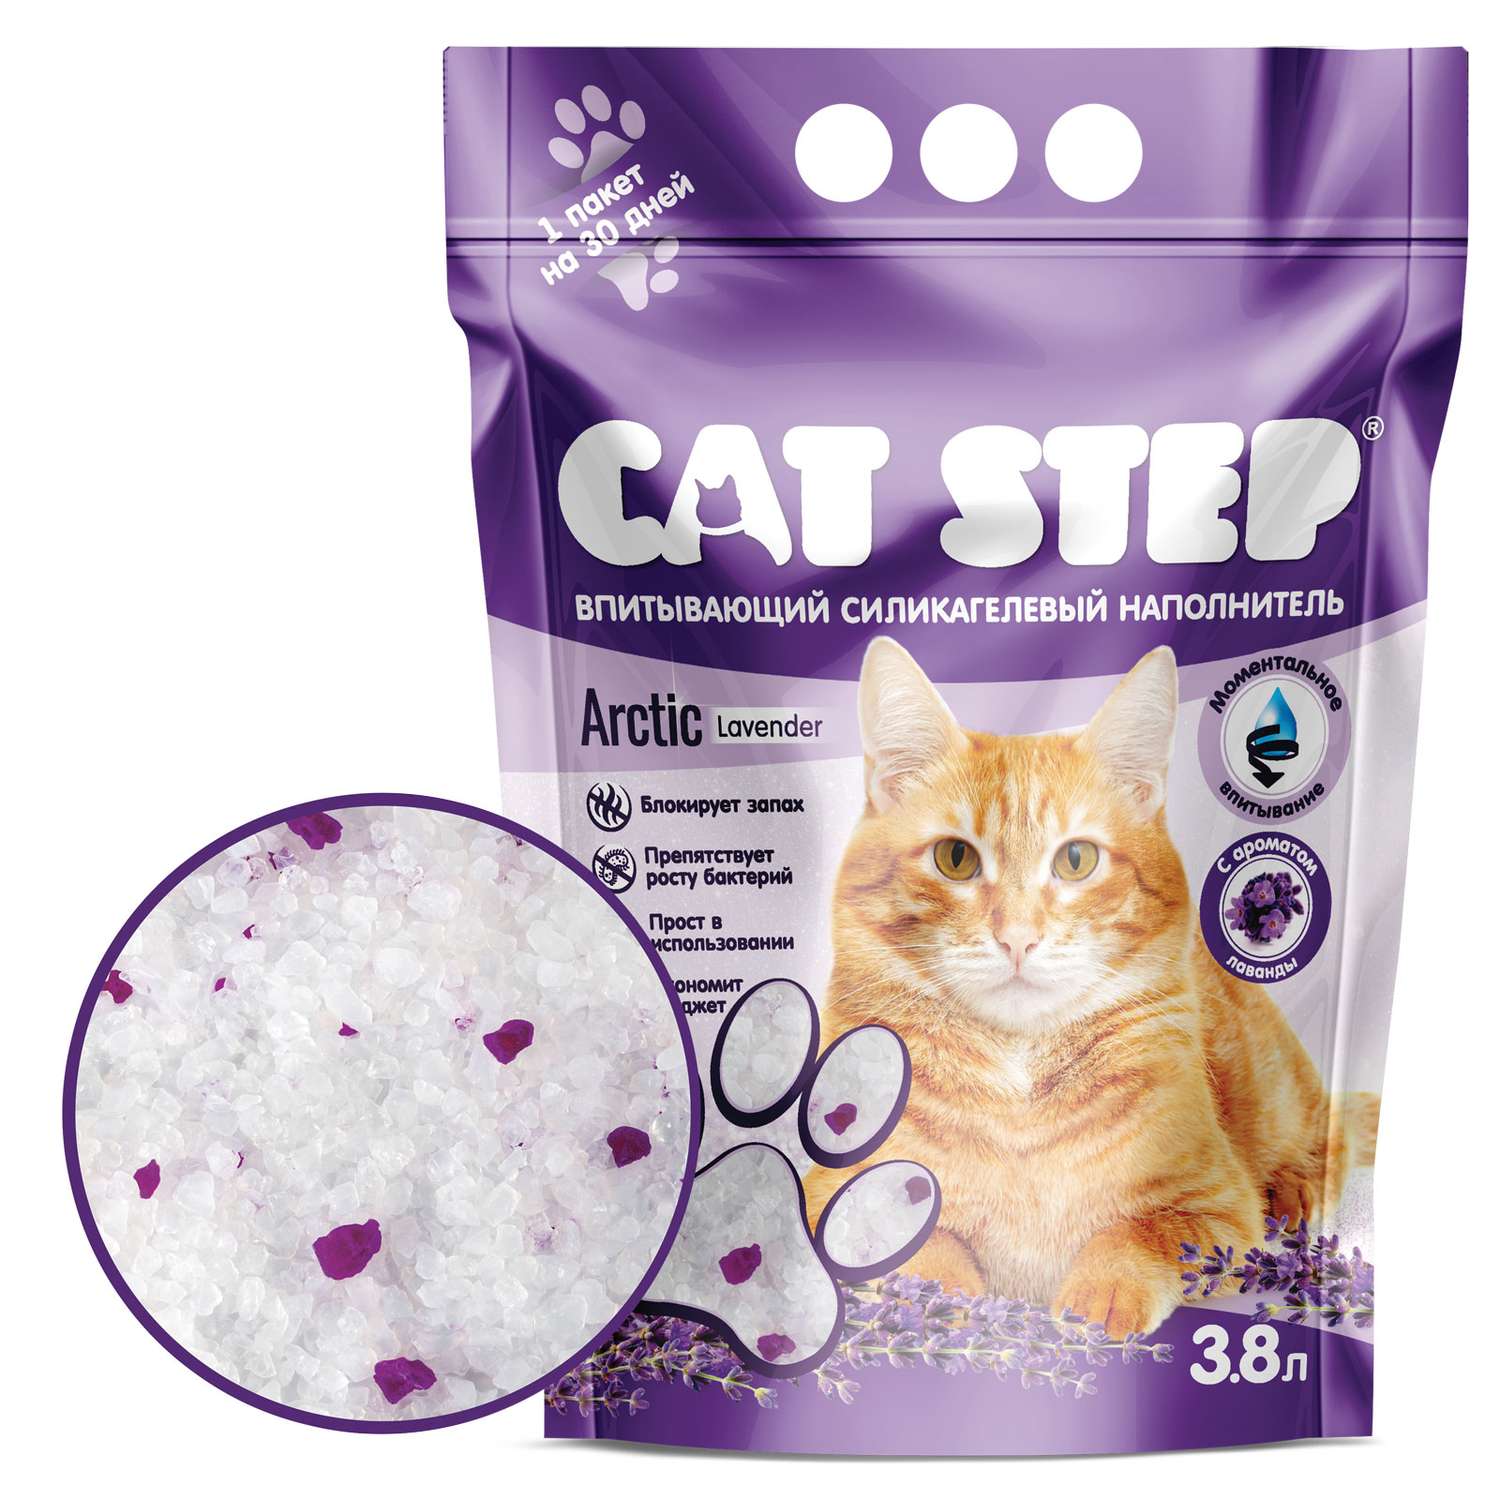 Наполнитель для кошек Cat Step Arctic Lavender впитывающий силикагелевый 3.8л - фото 1